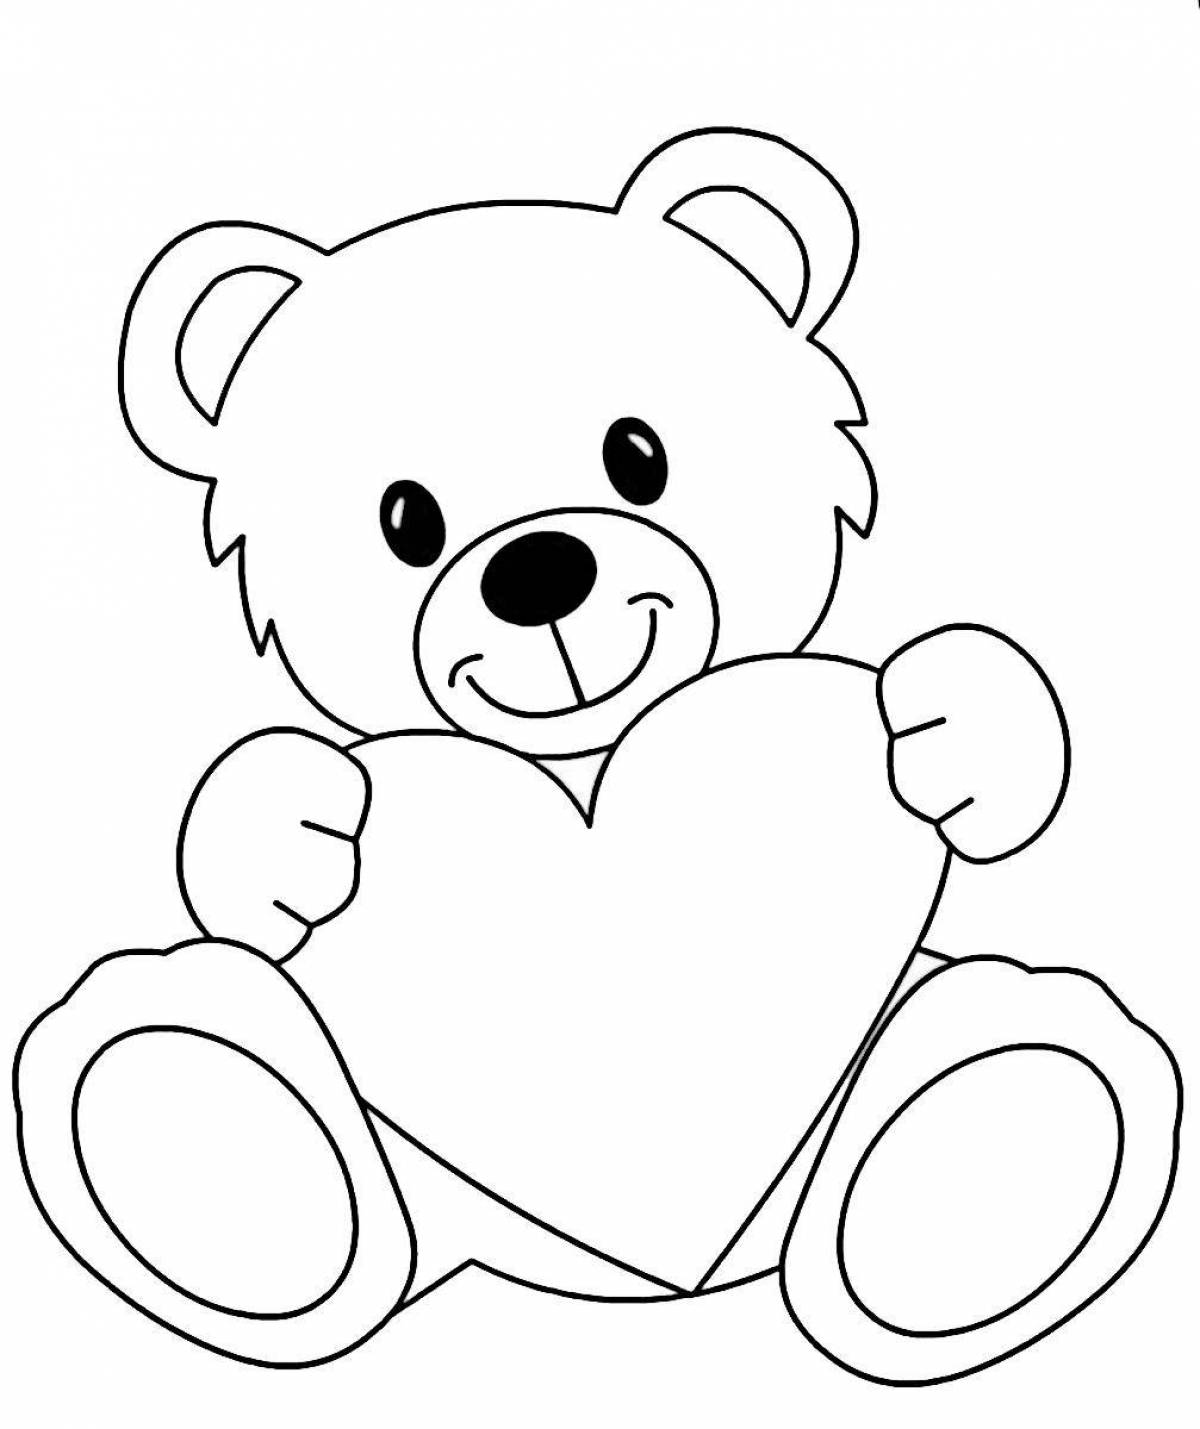 Smiling bear coloring book